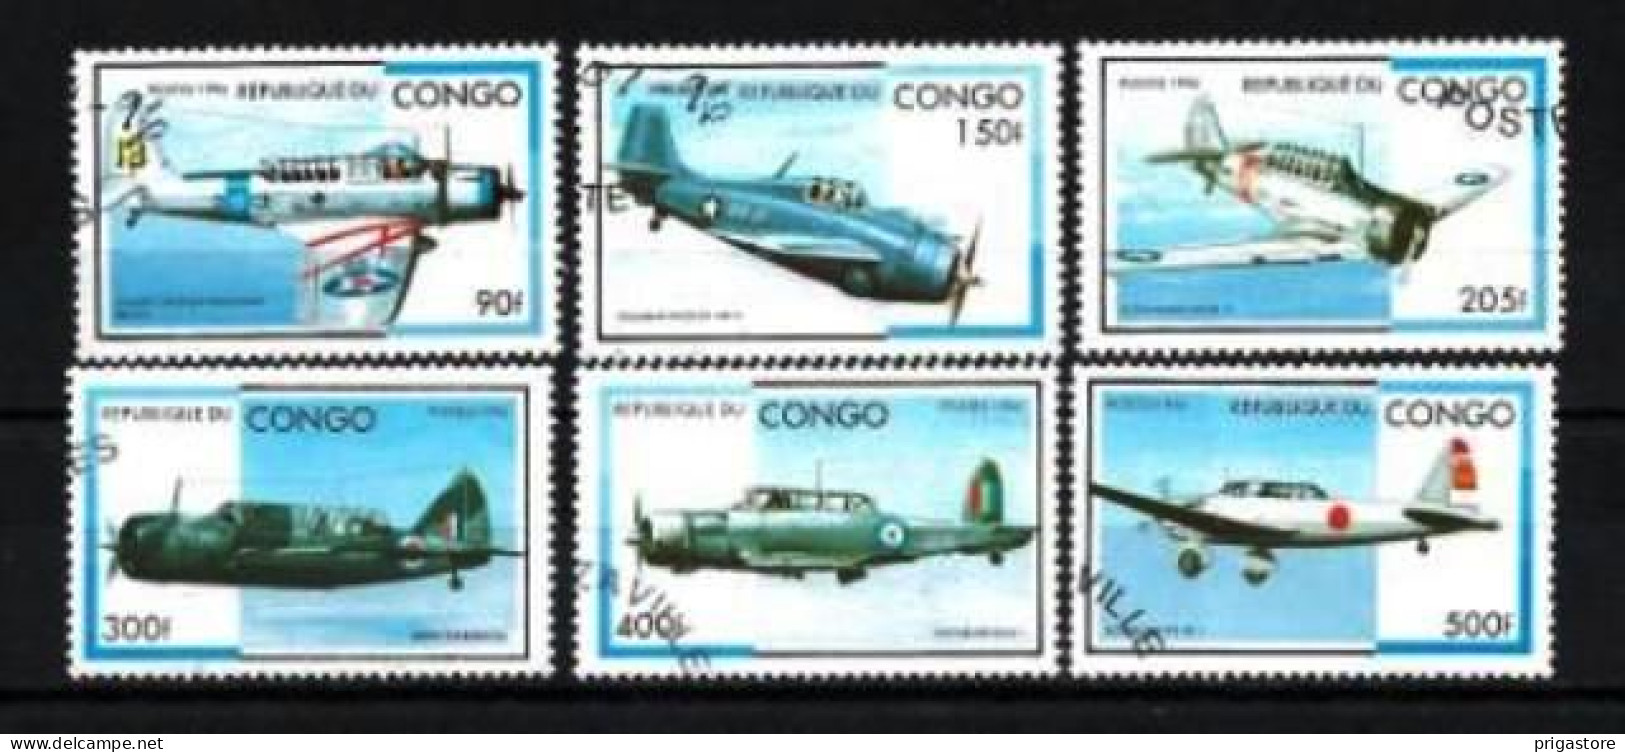 Congo 1996 Avions (39) Yvert N° 1026 N à 1026 T Oblitéré Used - Oblitérés